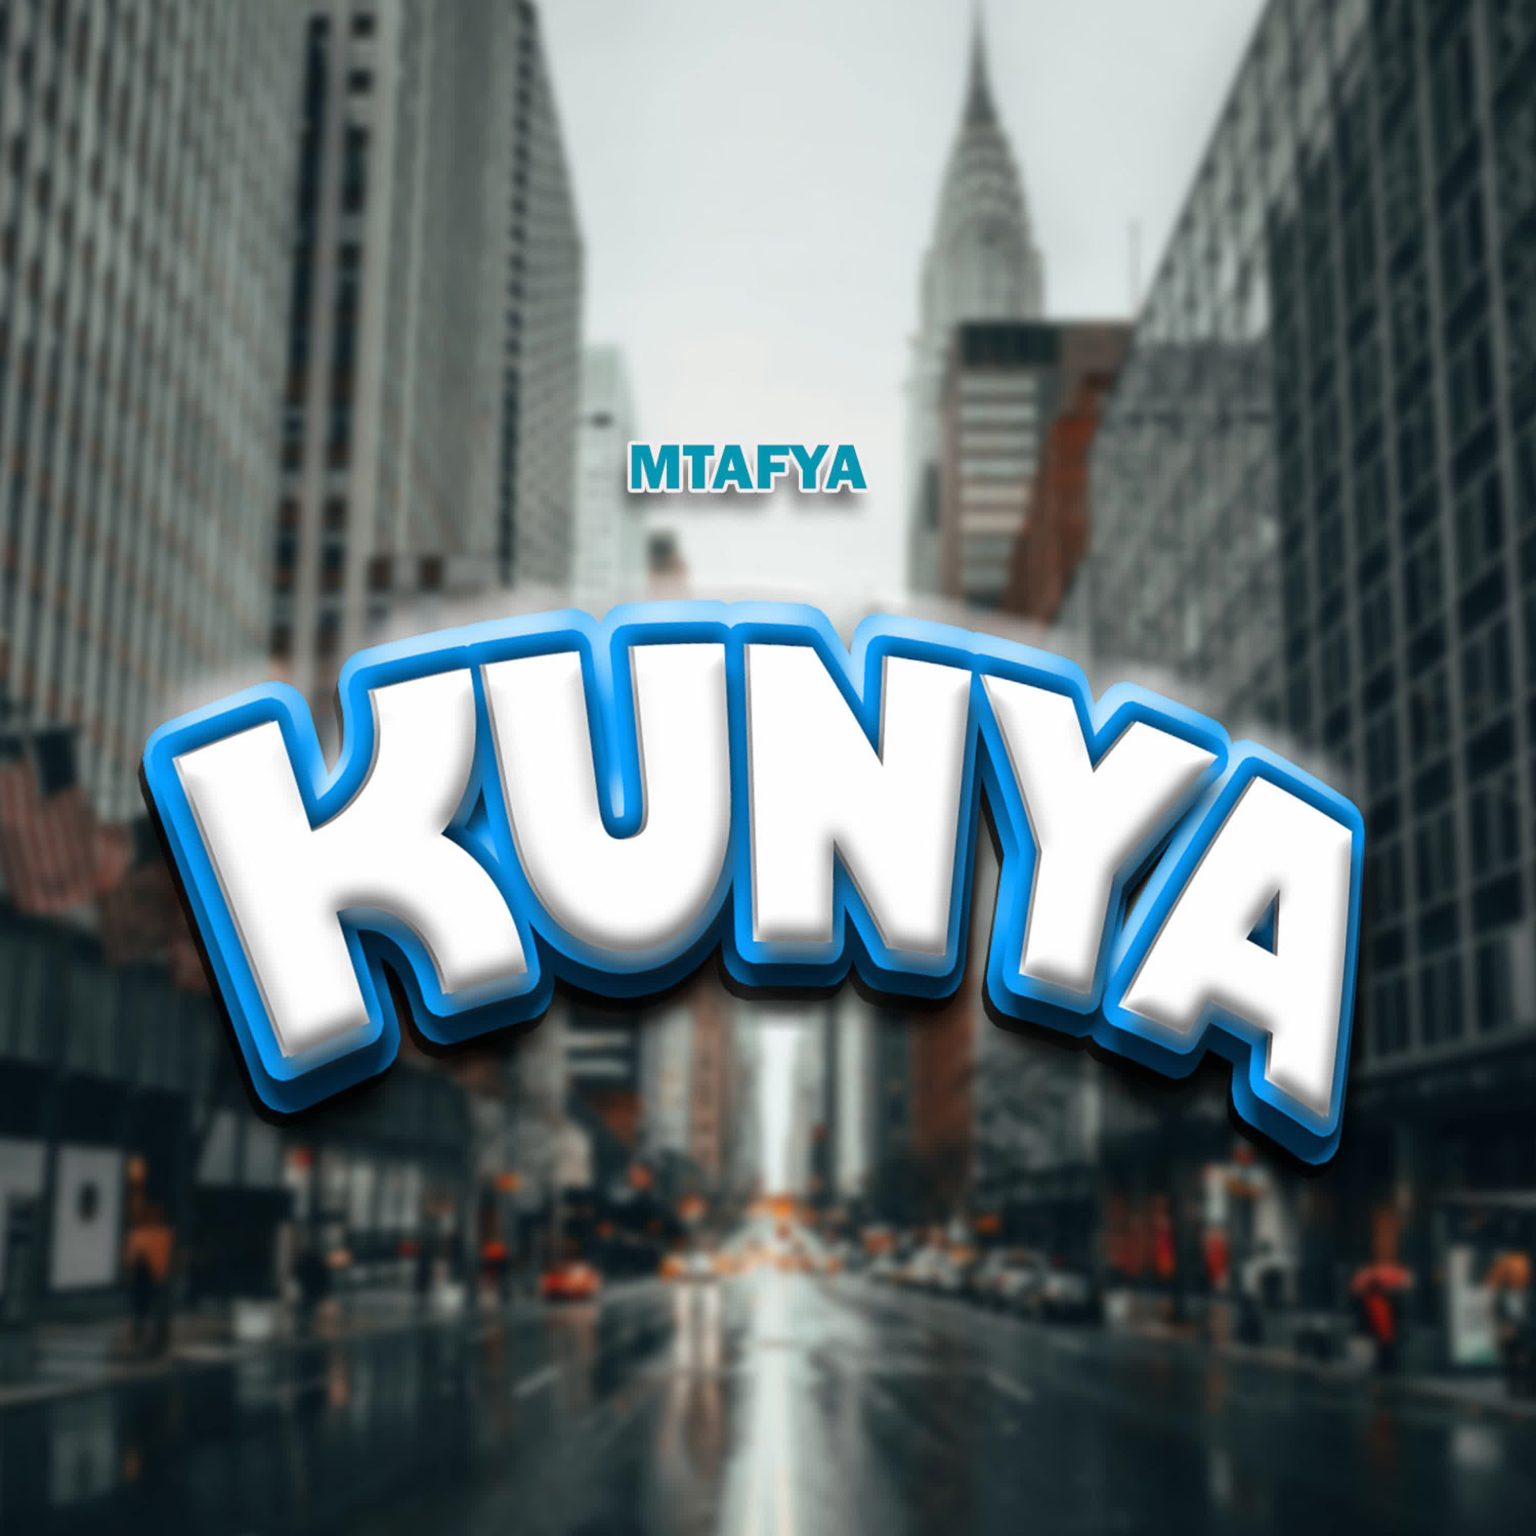  Mtafya – Kunya